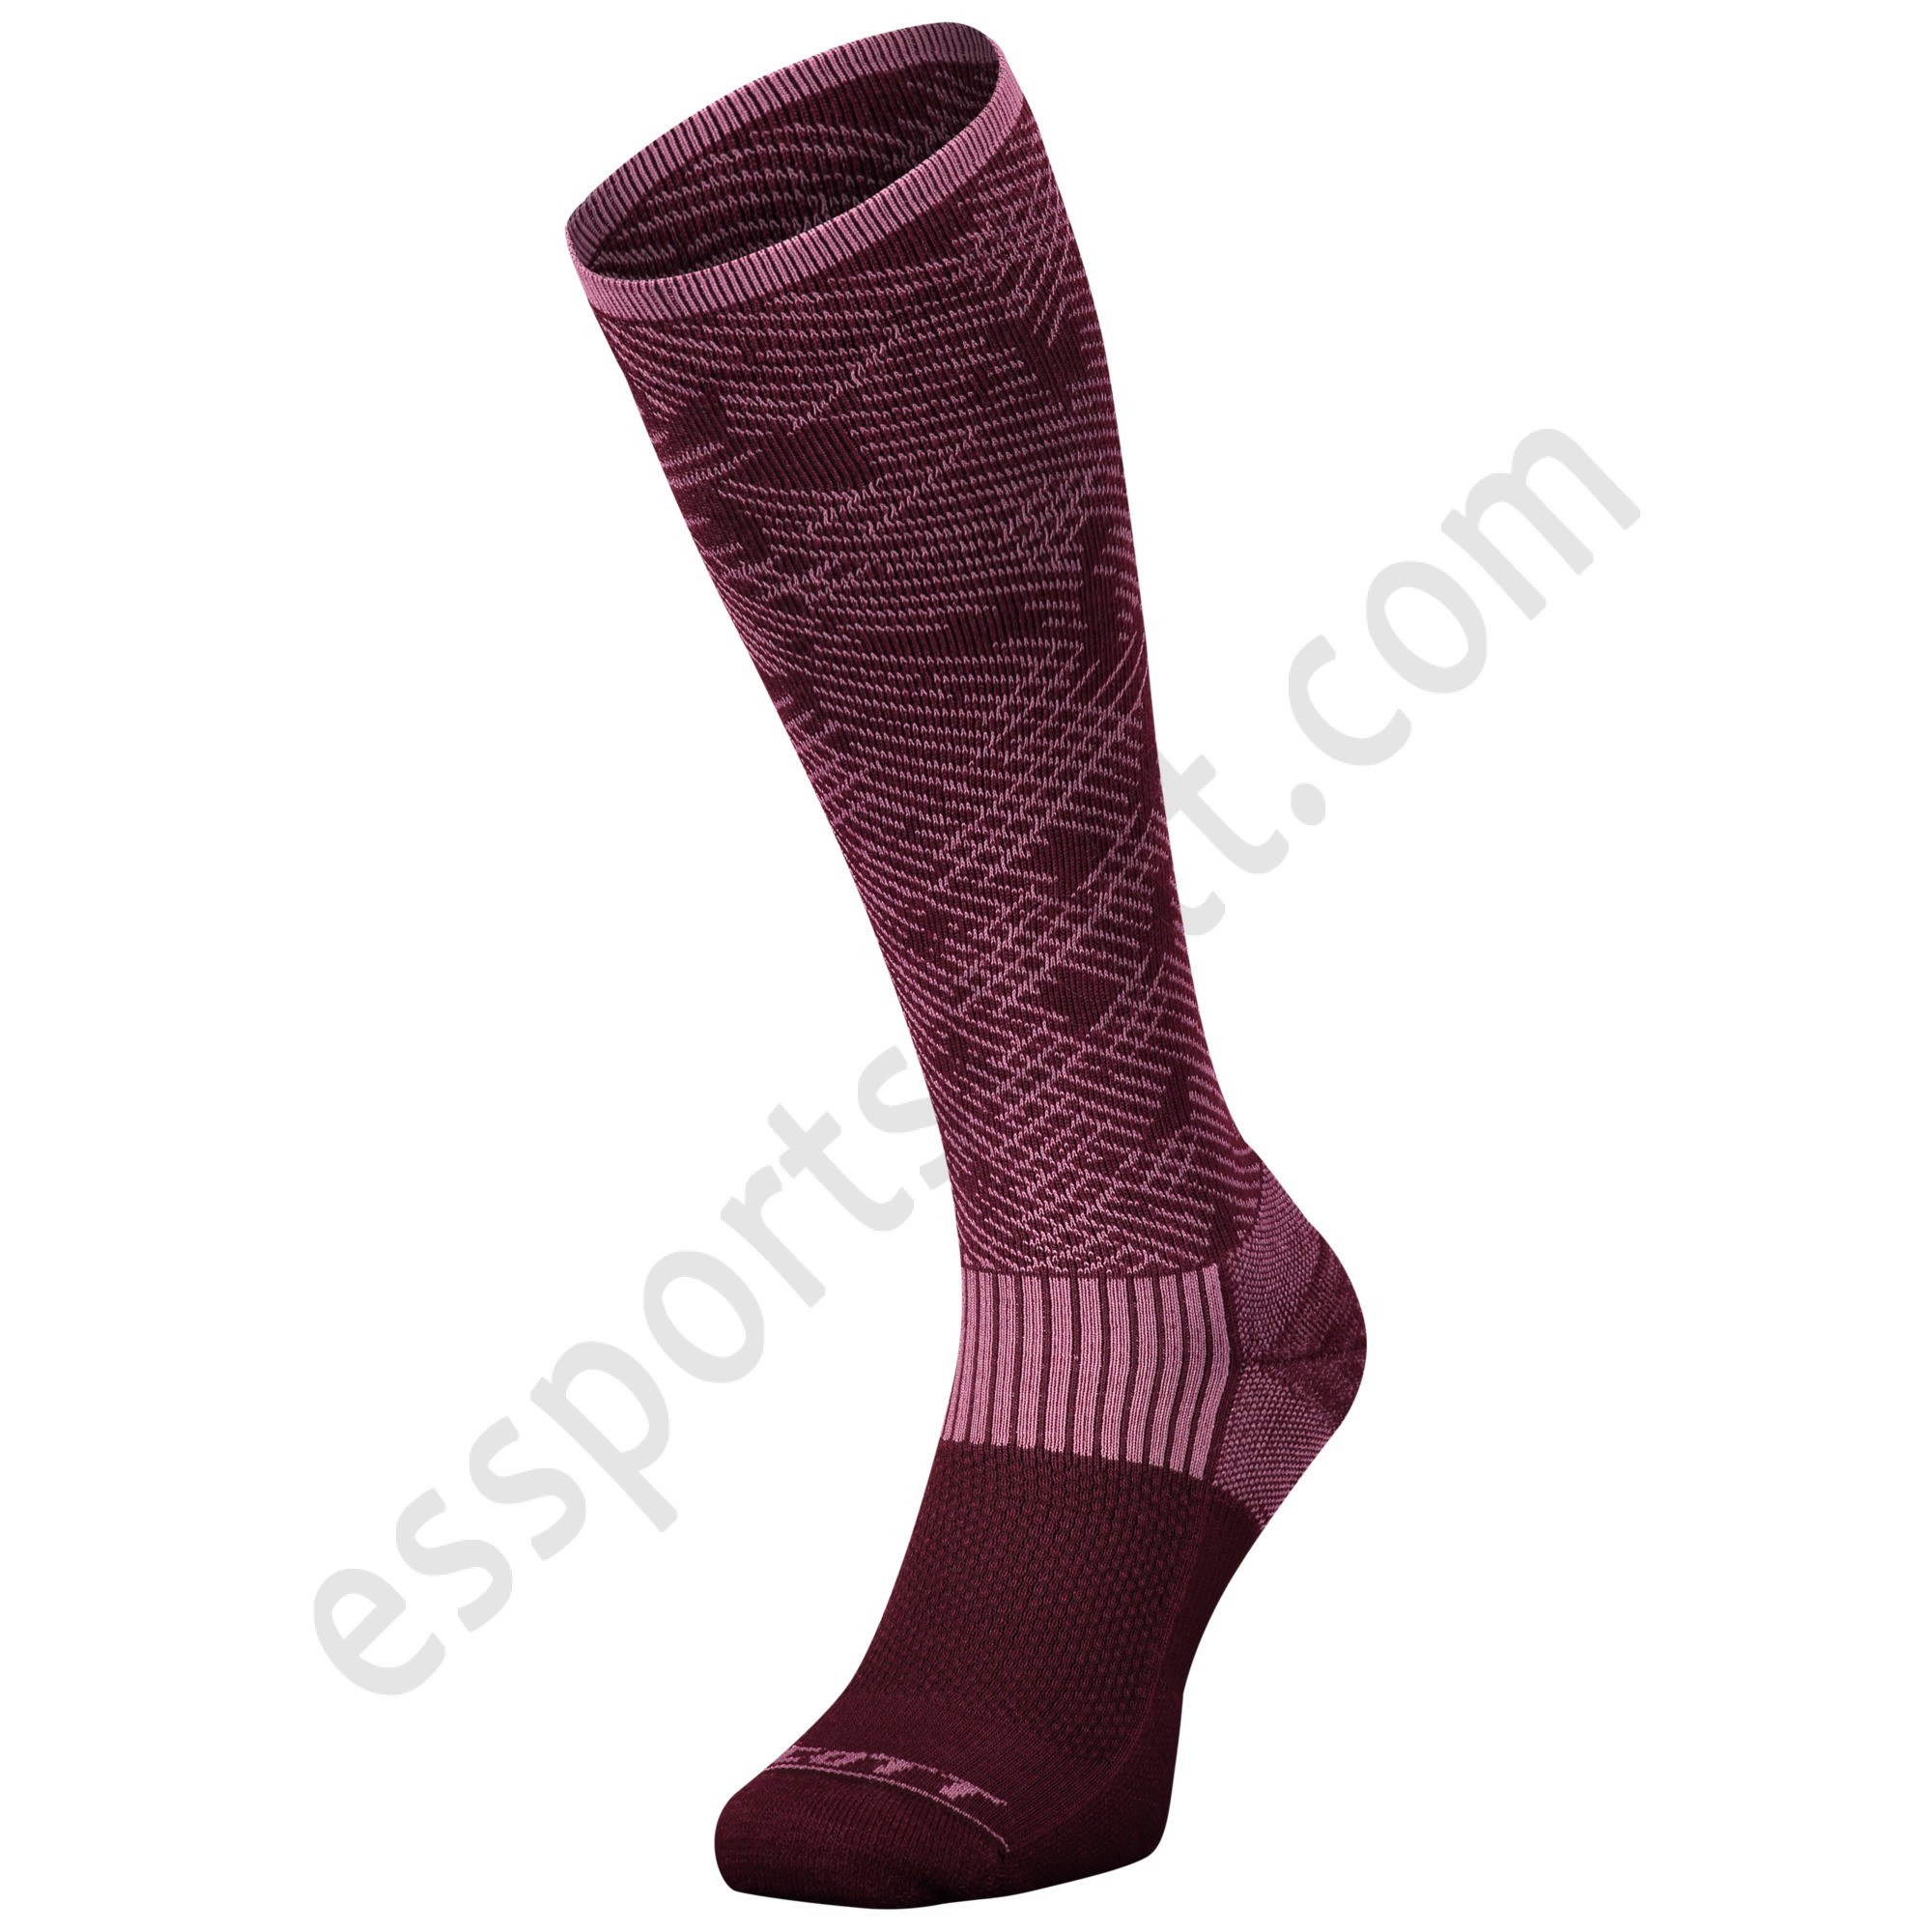 Scott Tienda ◇ Merino Camo Socks - Scott Tienda ◇ Merino Camo Socks